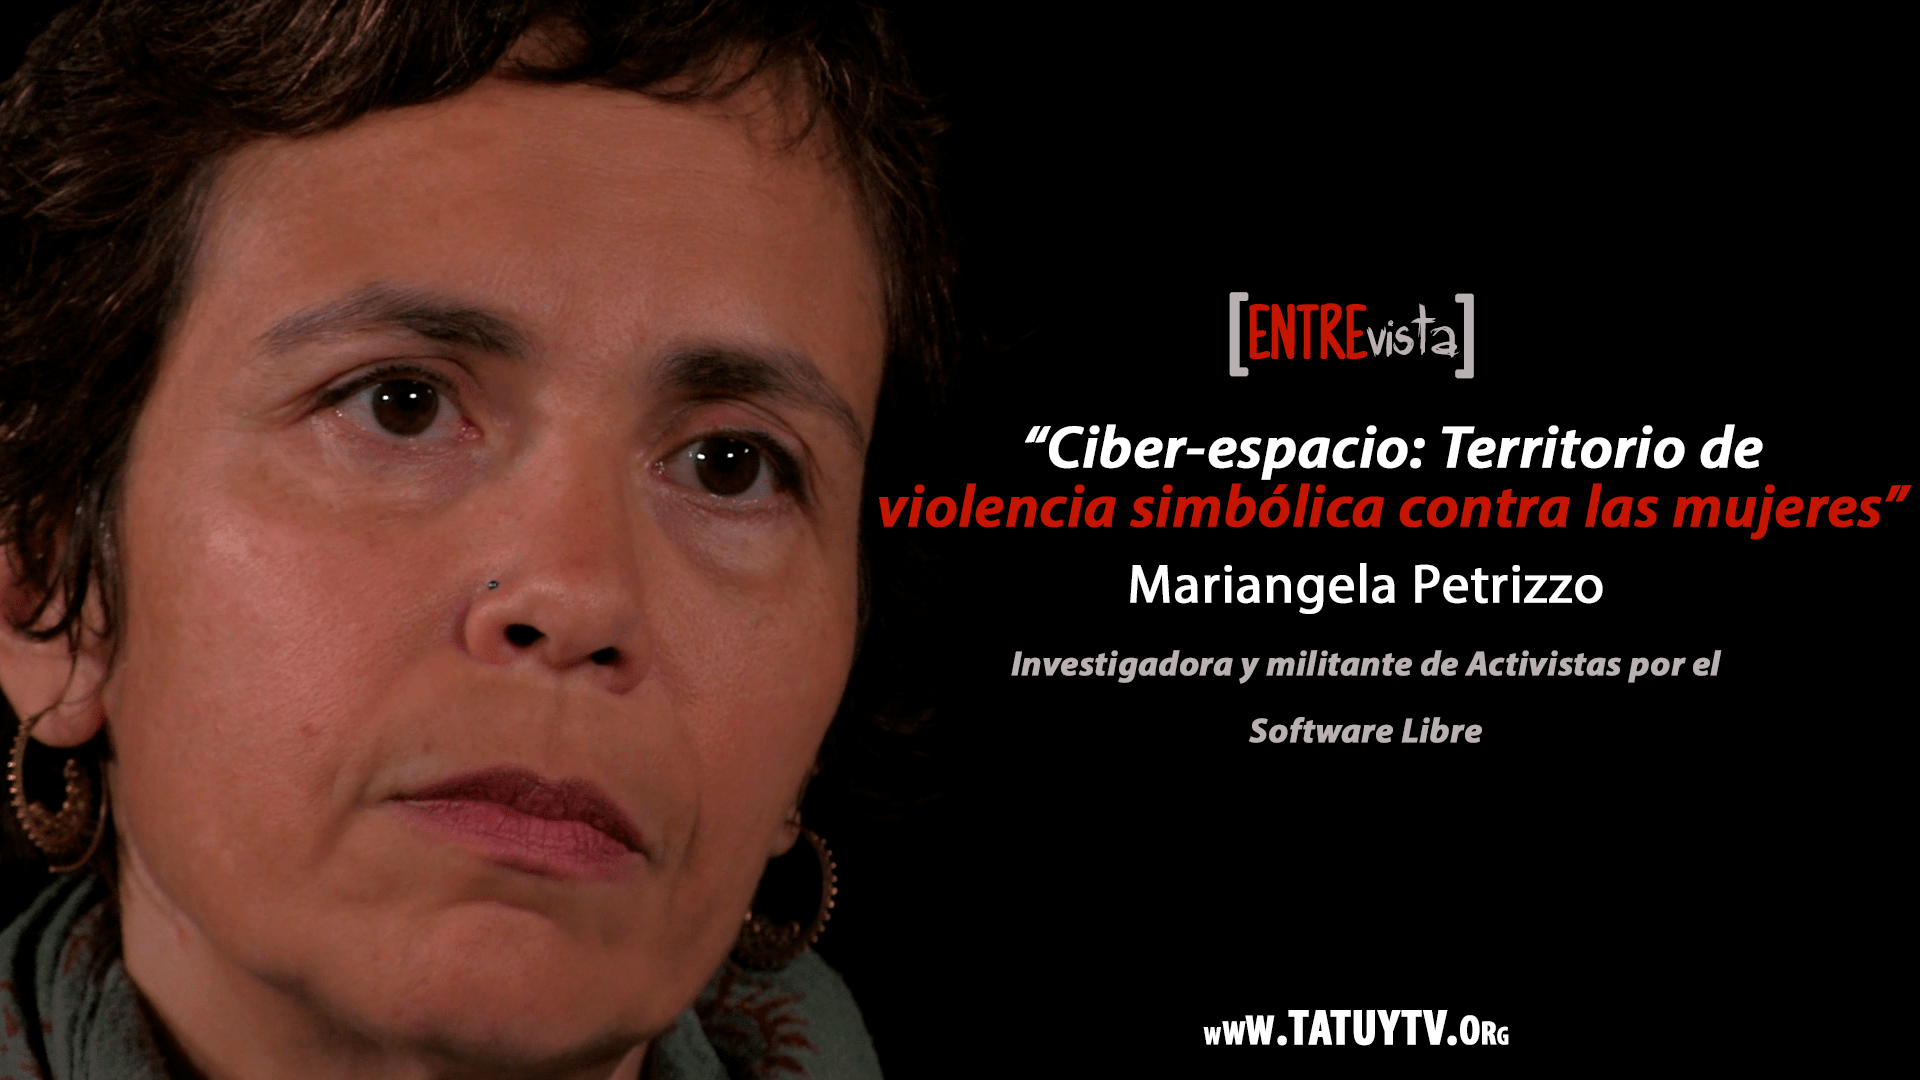 [ENTREVISTA] Ciber-espacio: Territorio de violencia simbólica contra las mujeres - Mariangela Petrizzo